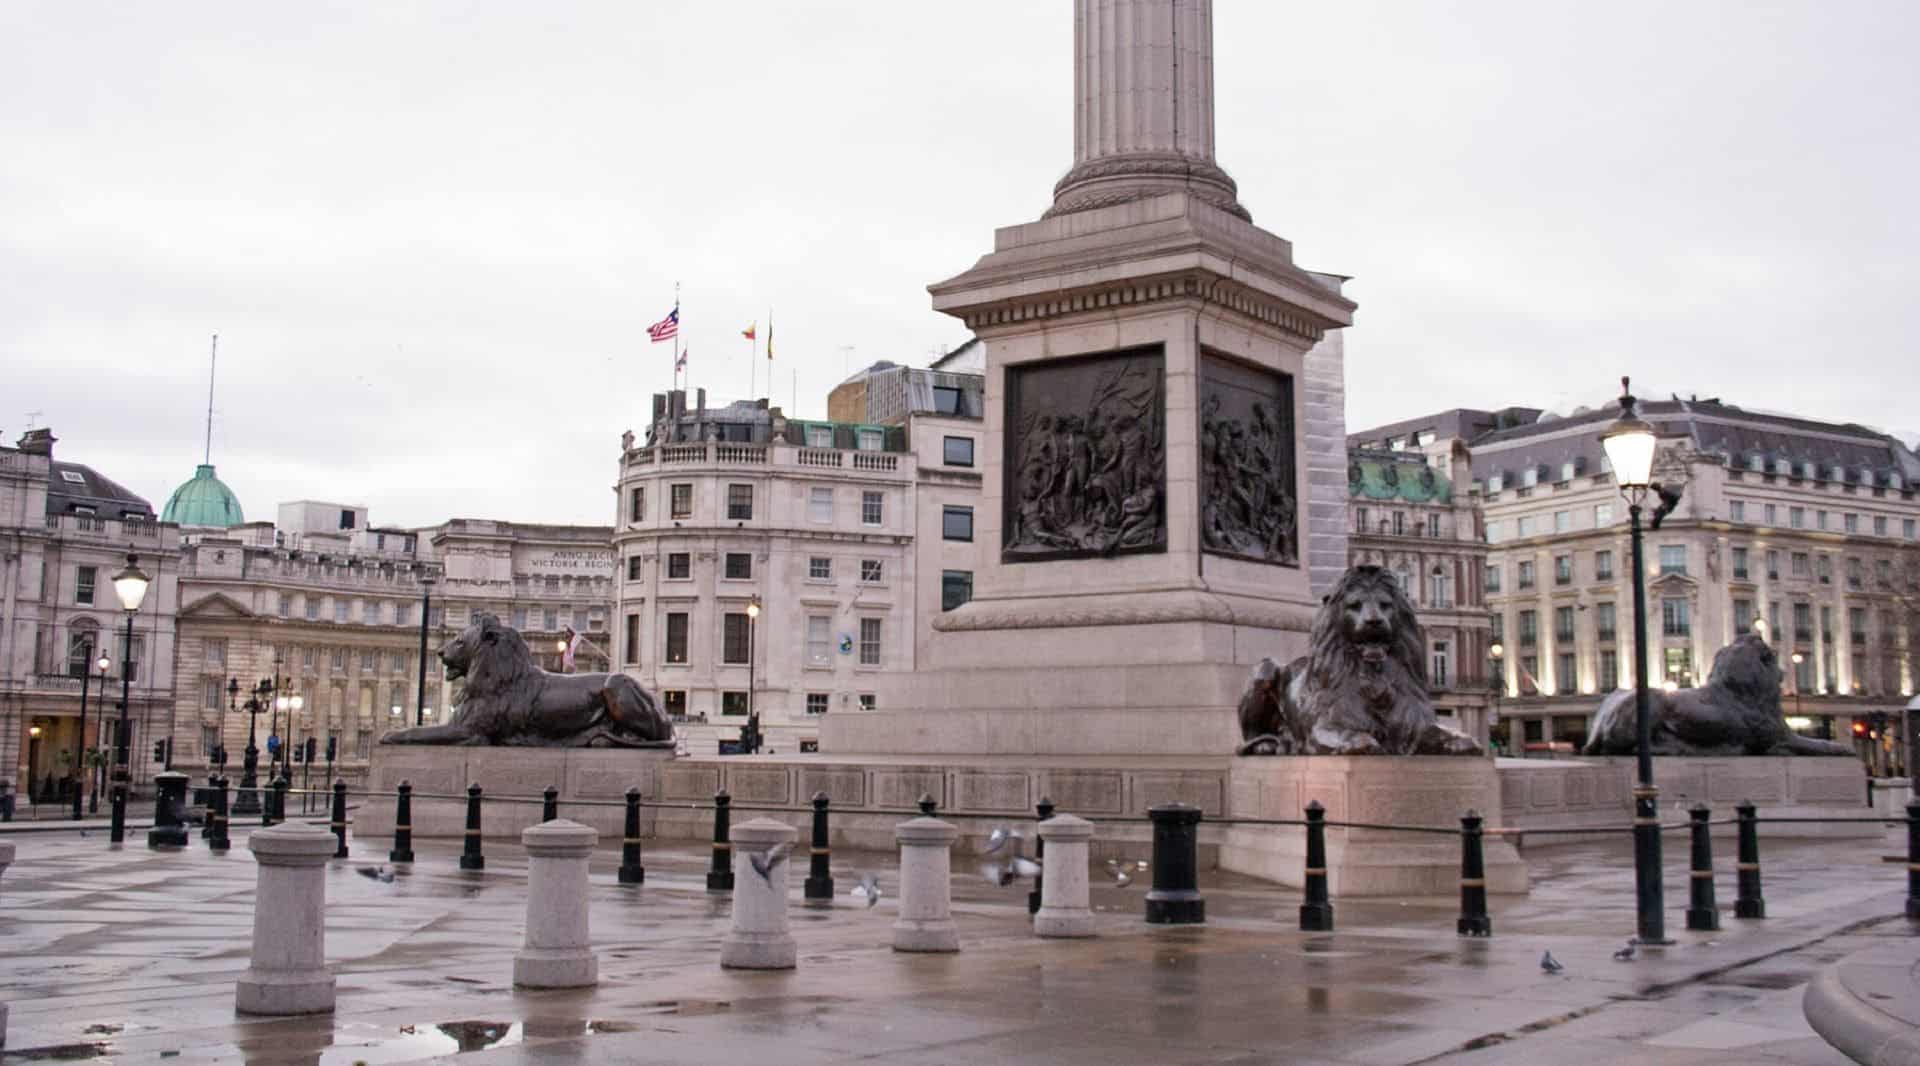 Trafalgar Square in UK